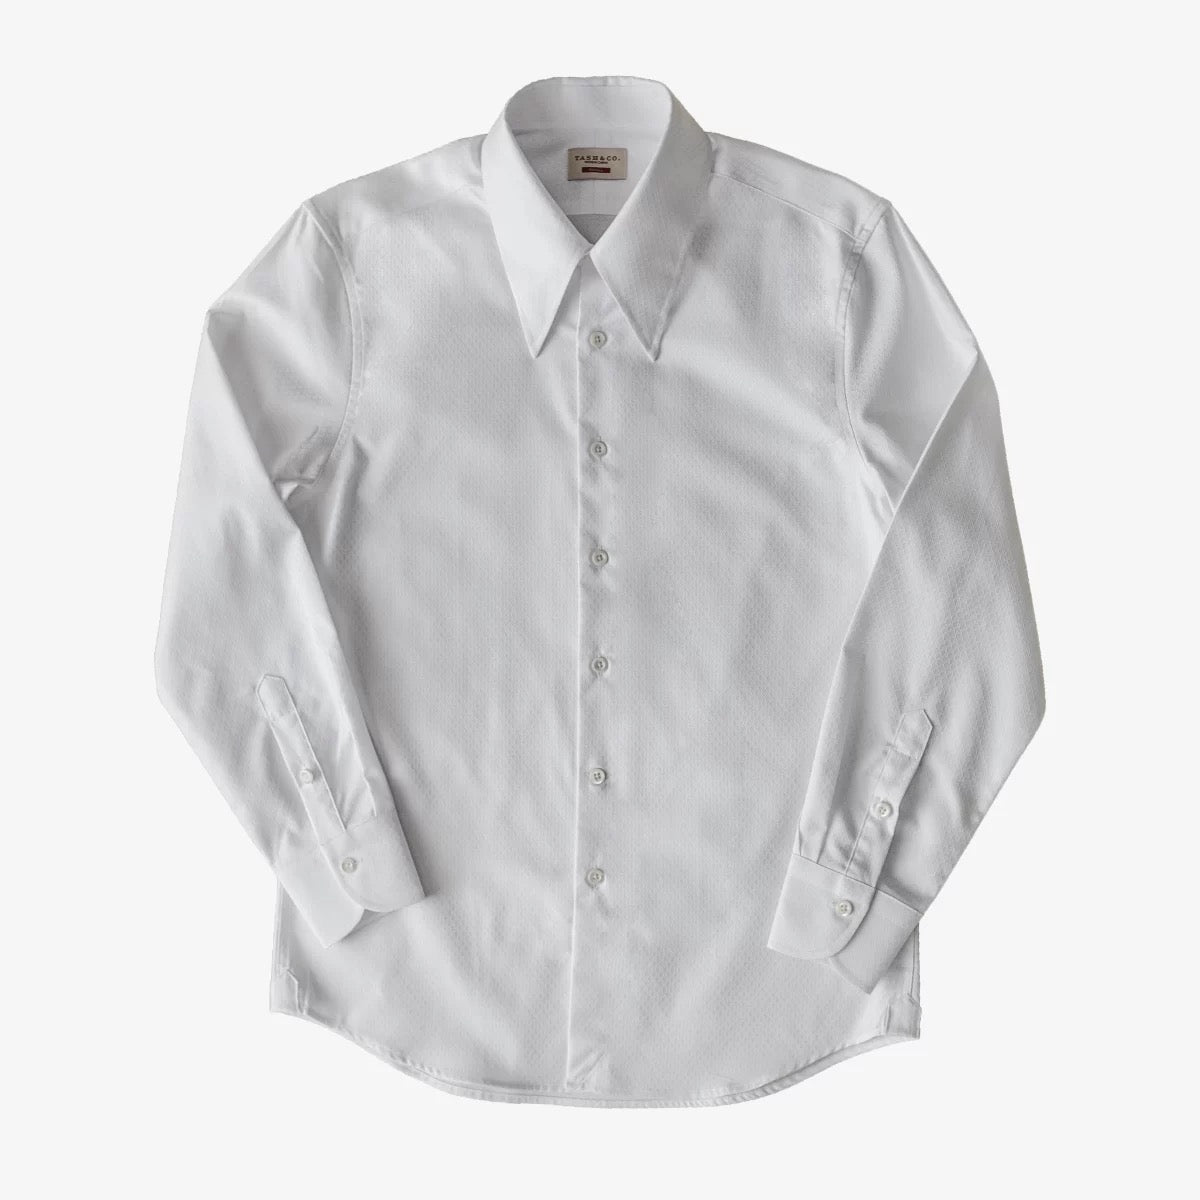 Men's White Jacquard Pointed Collar Shirt